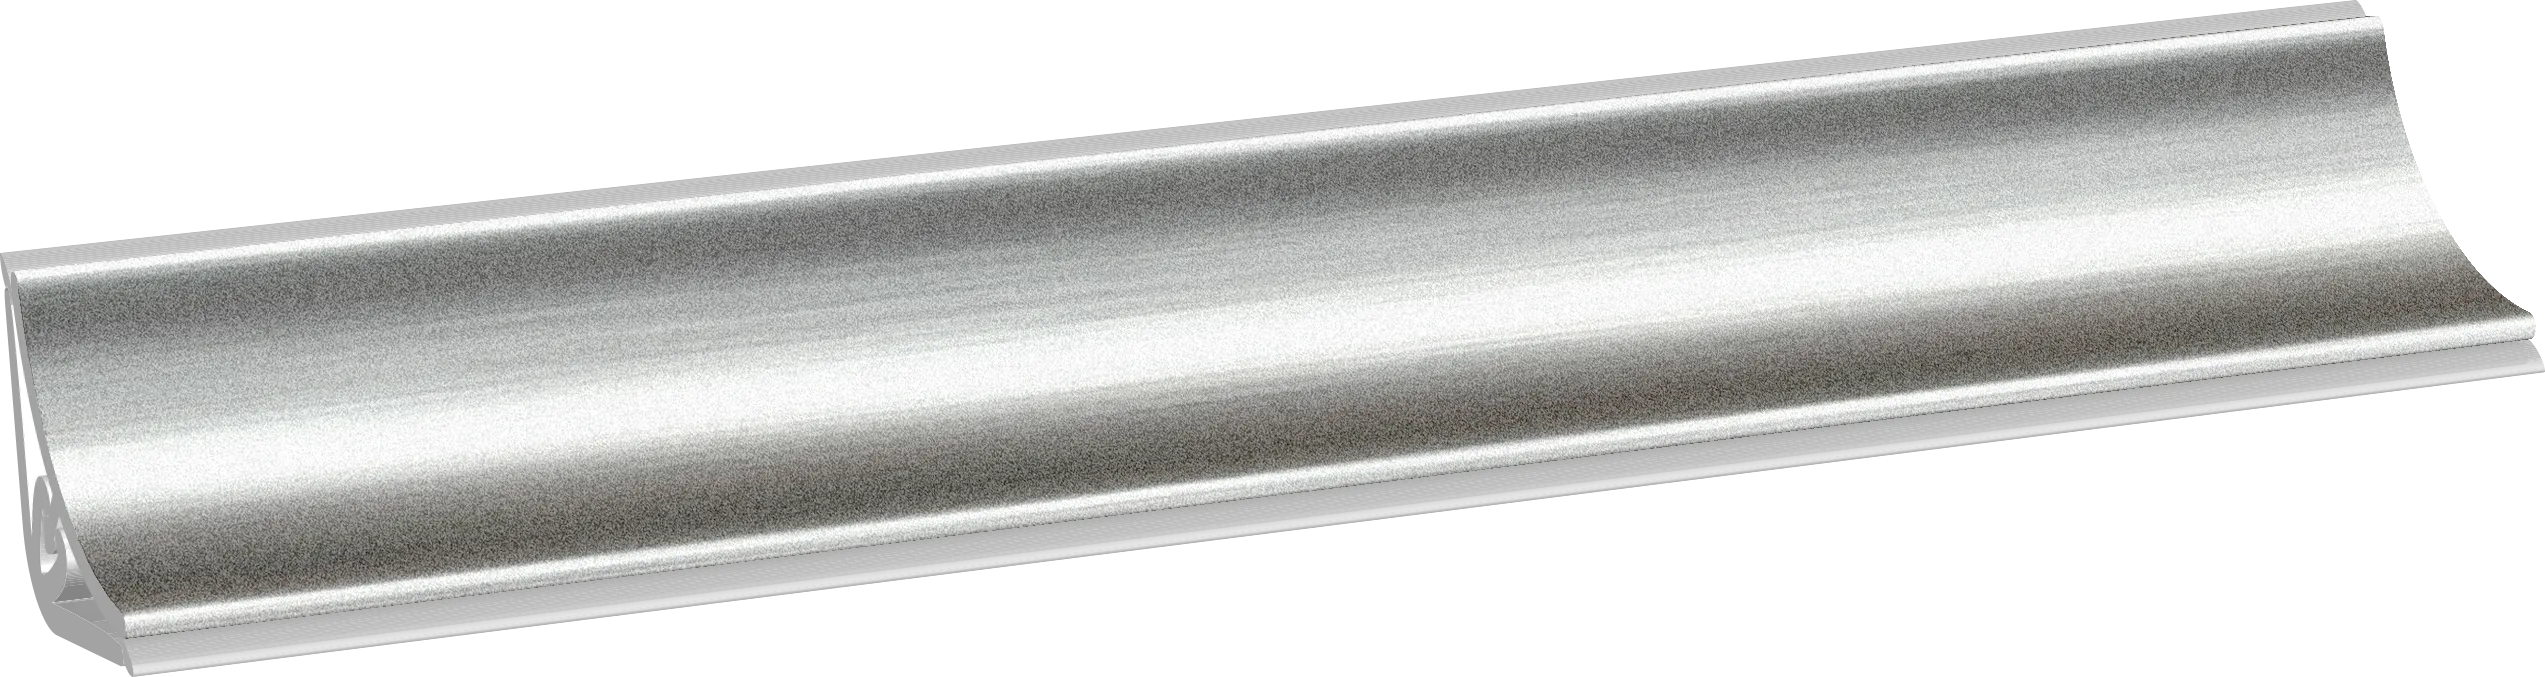 Алюминий LB-20-15-А-001 (алюмин.) Плинтус 3,0м